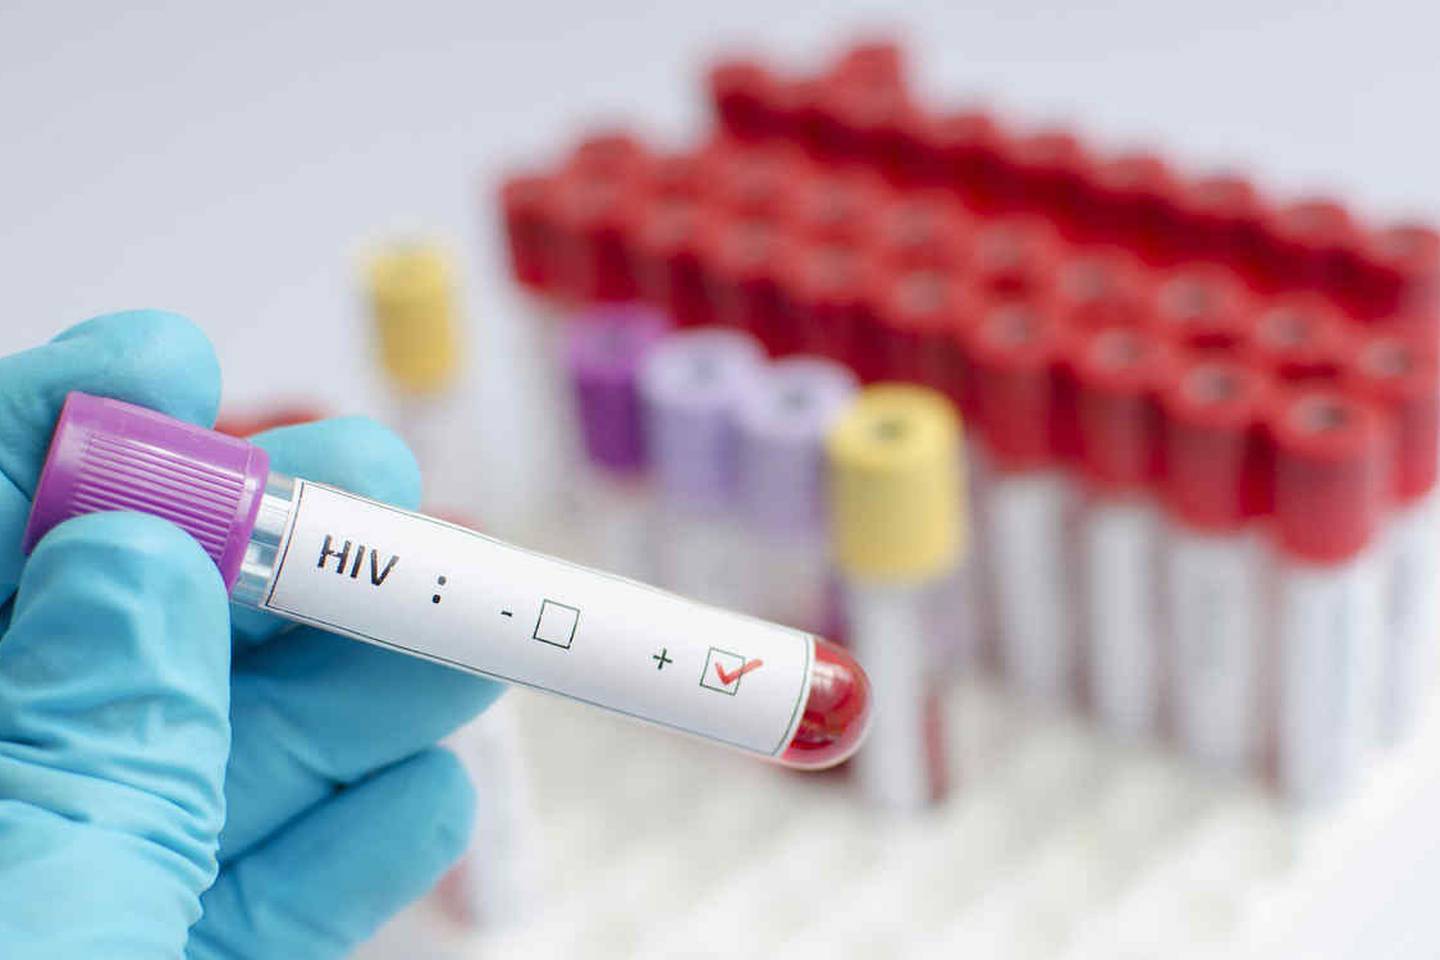 Las estadísticas muestran que una de cada siete personas no sabe que es portadora del VIH y que esto crea una cadena de contagio que debe detenerse.